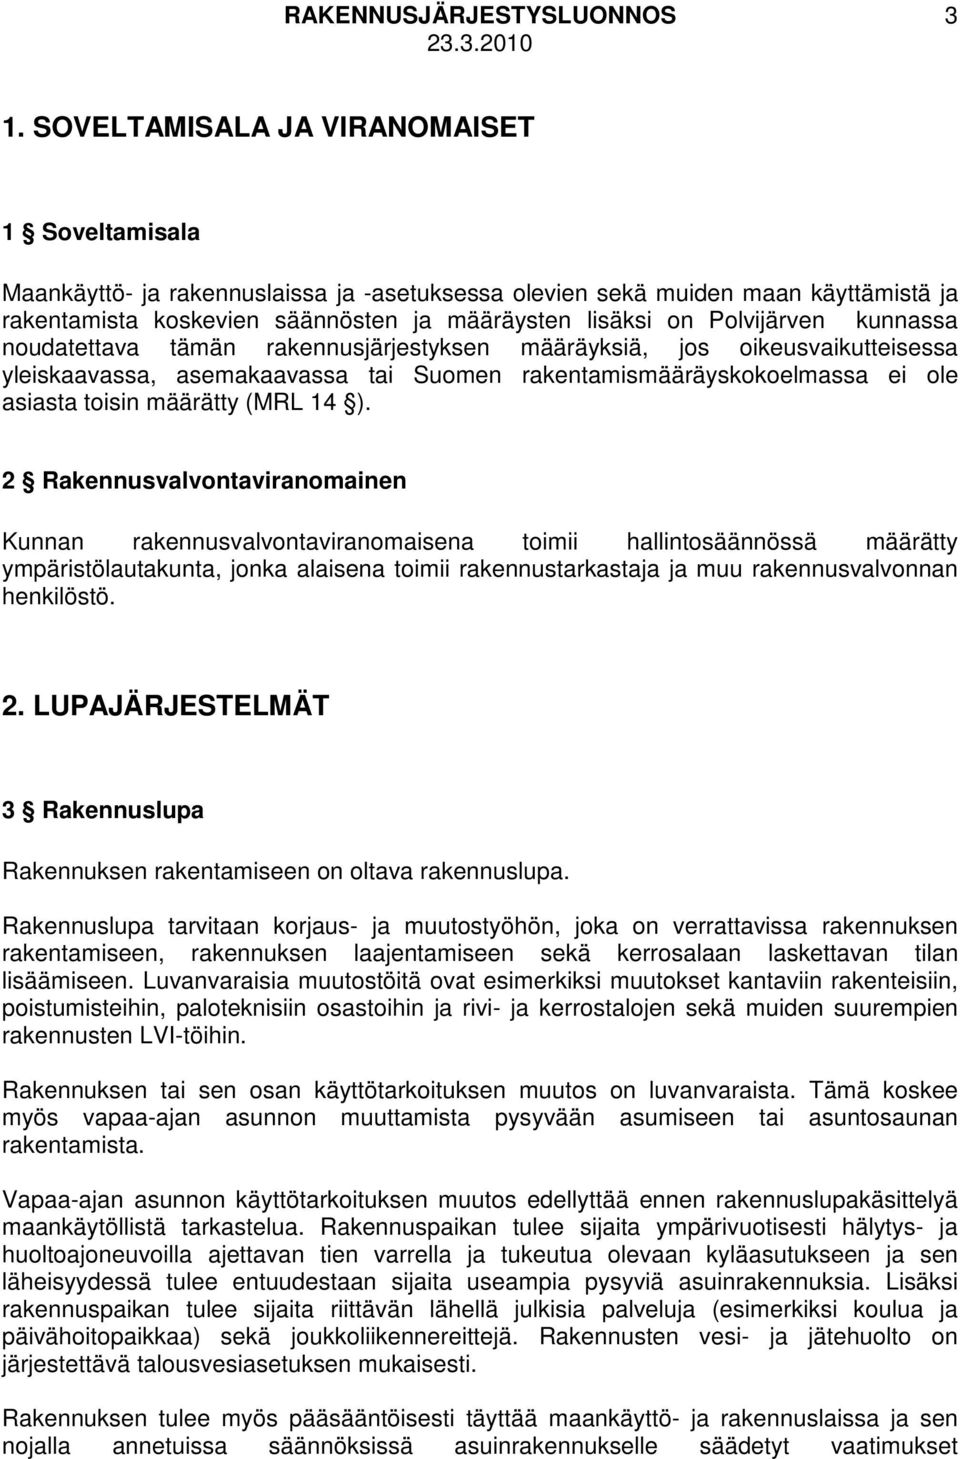 Polvijärven kunnassa noudatettava tämän rakennusjärjestyksen määräyksiä, jos oikeusvaikutteisessa yleiskaavassa, asemakaavassa tai Suomen rakentamismääräyskokoelmassa ei ole asiasta toisin määrätty